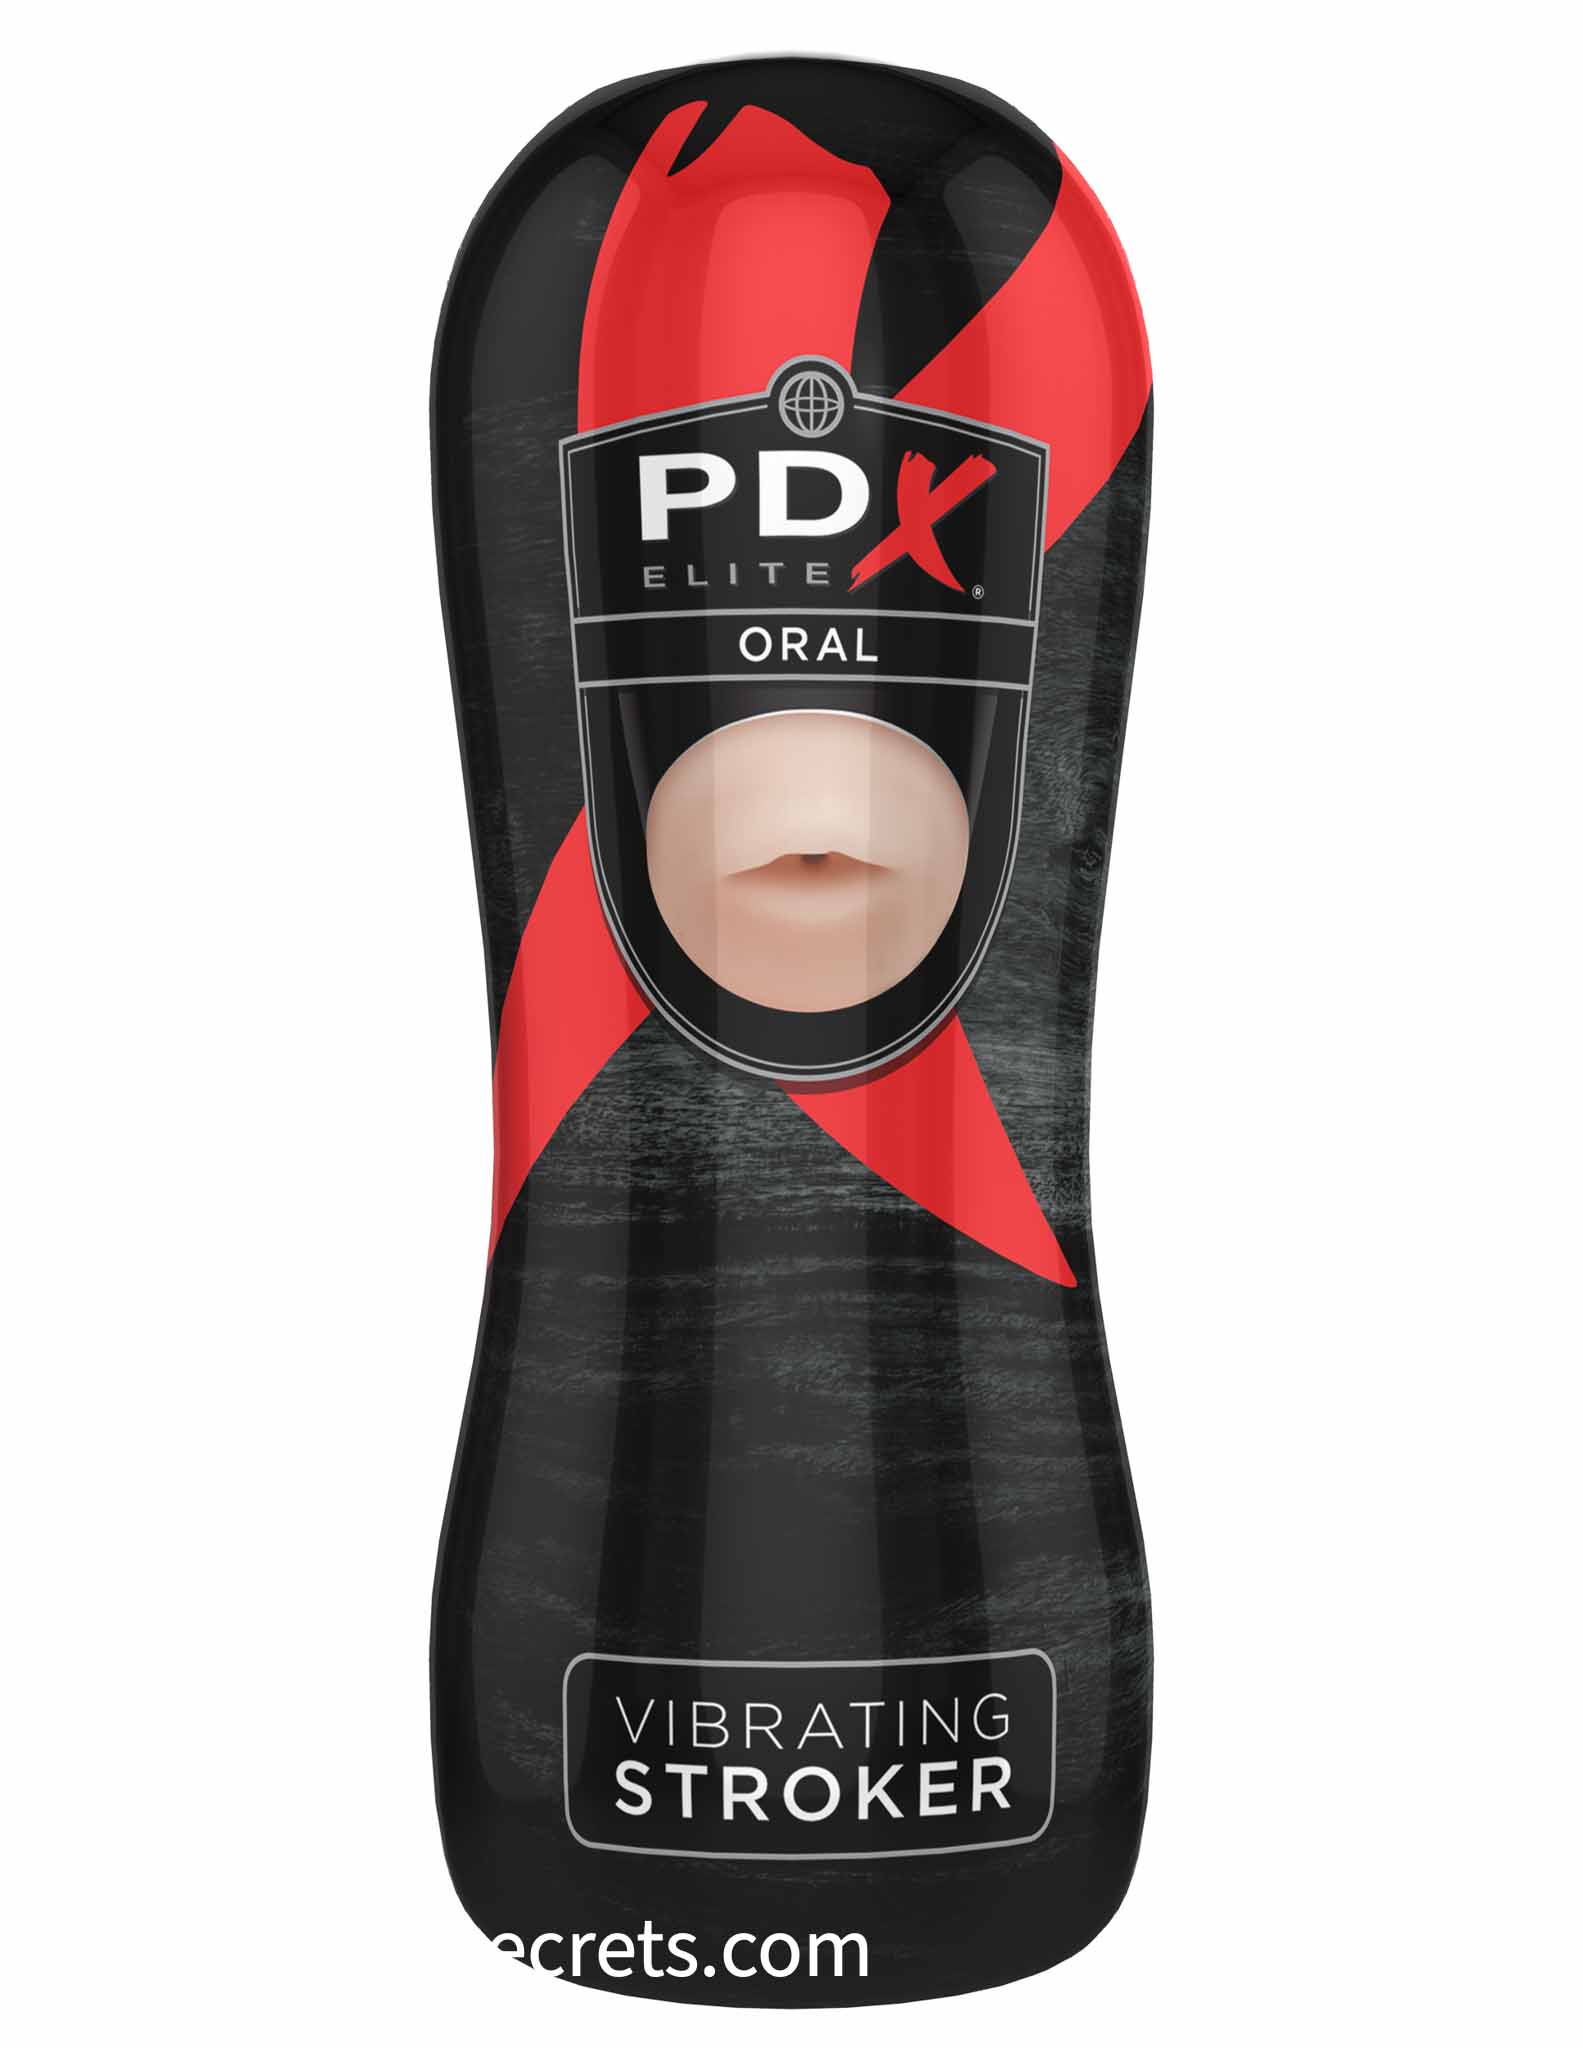 PDX Elite Vibrating Oral Stroker